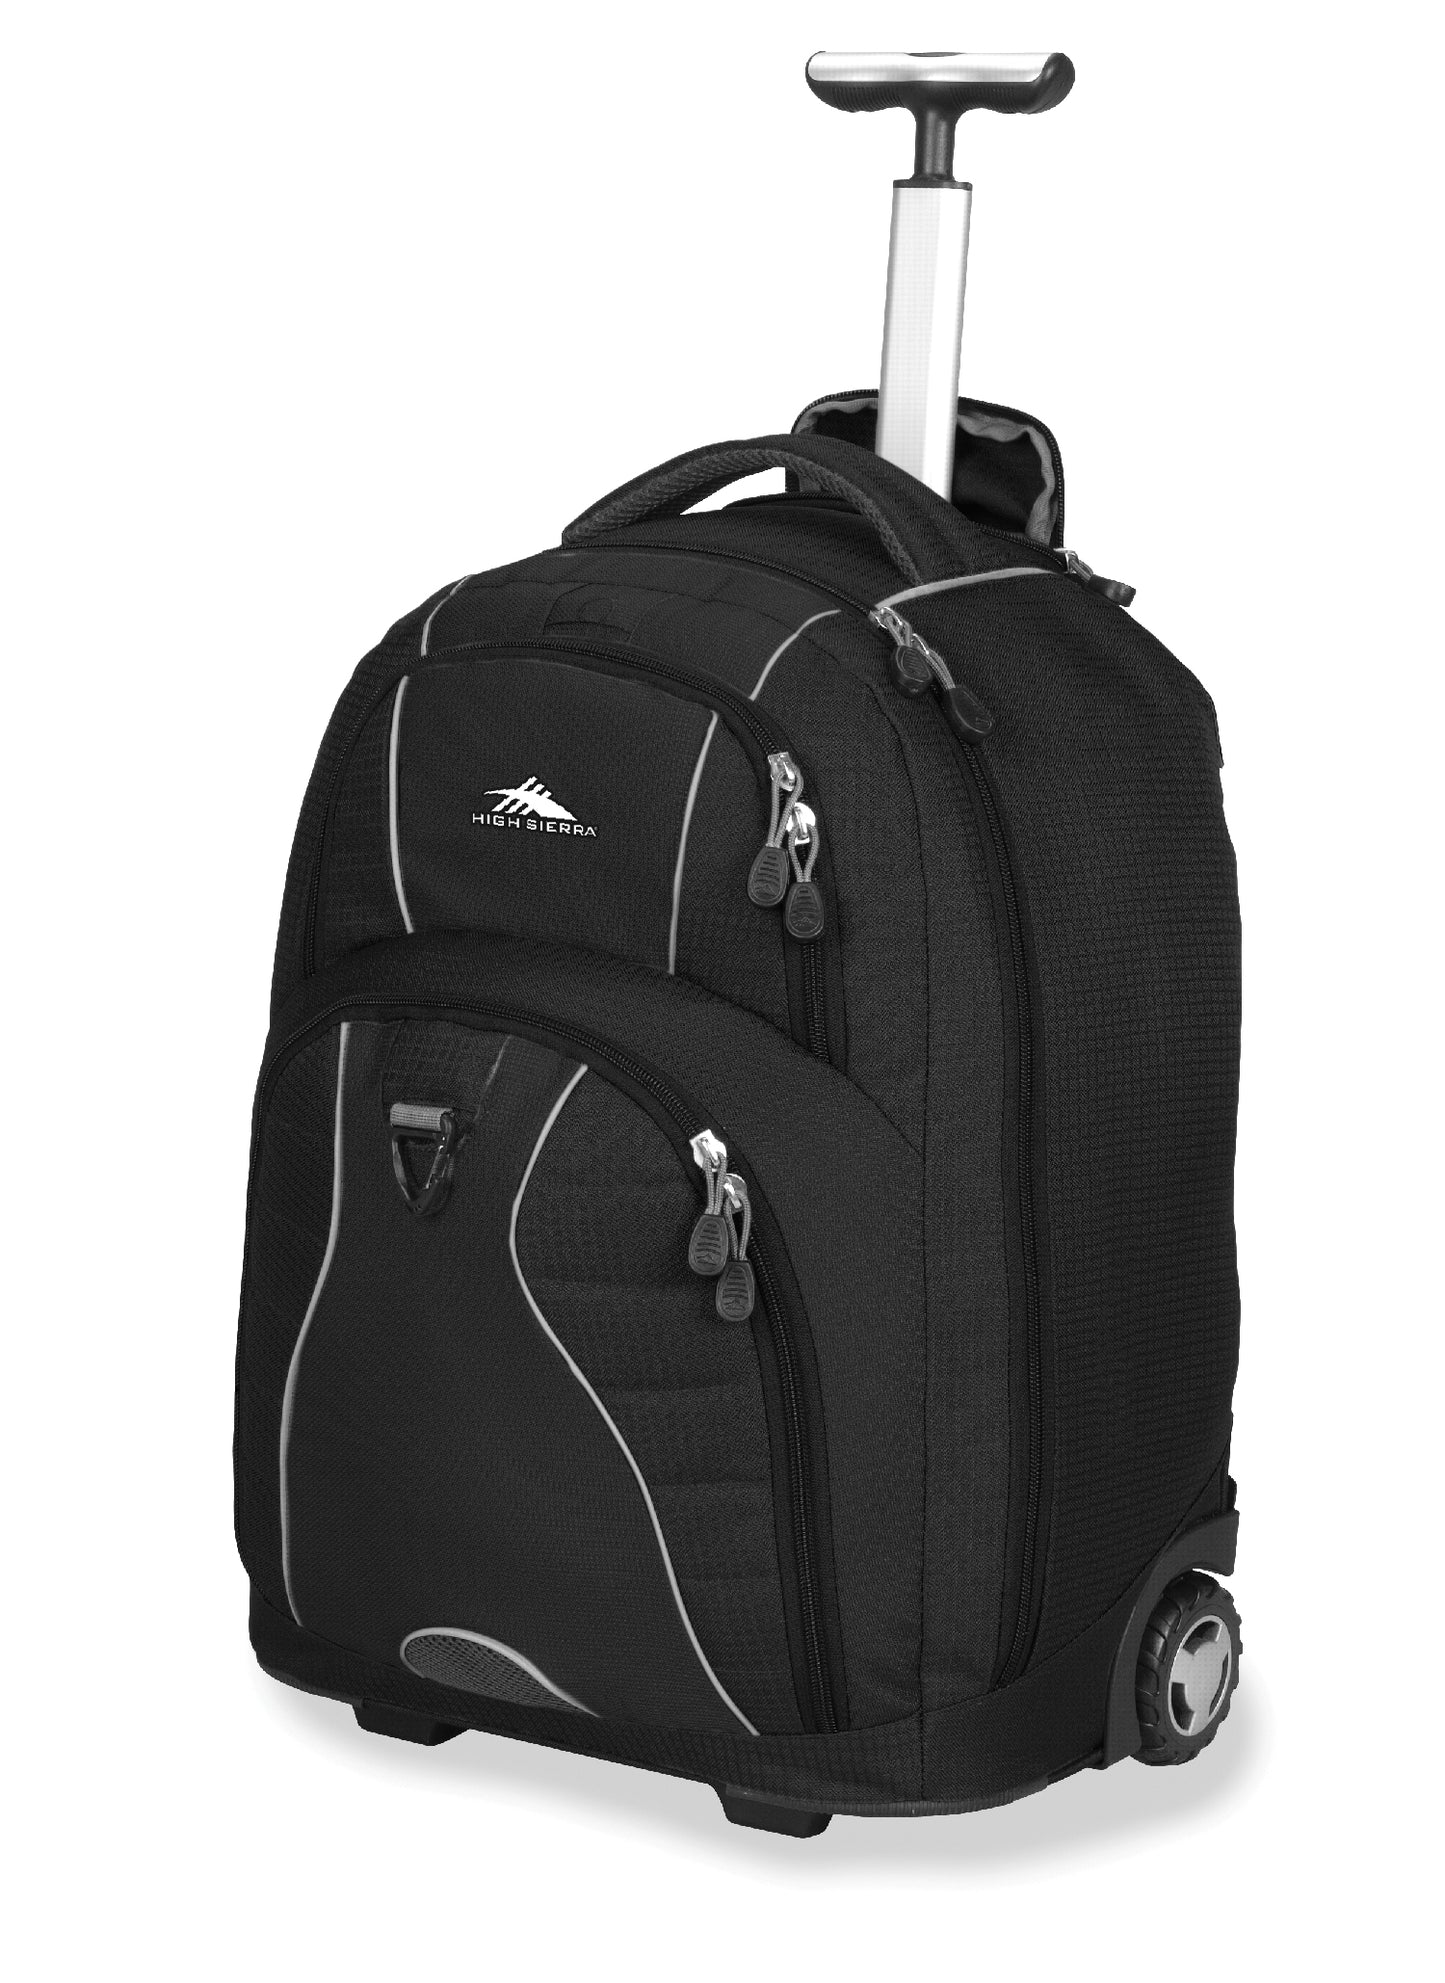 High Sierra Freewheel 17" Laptop Wheel Backpack Black - rainbowbags